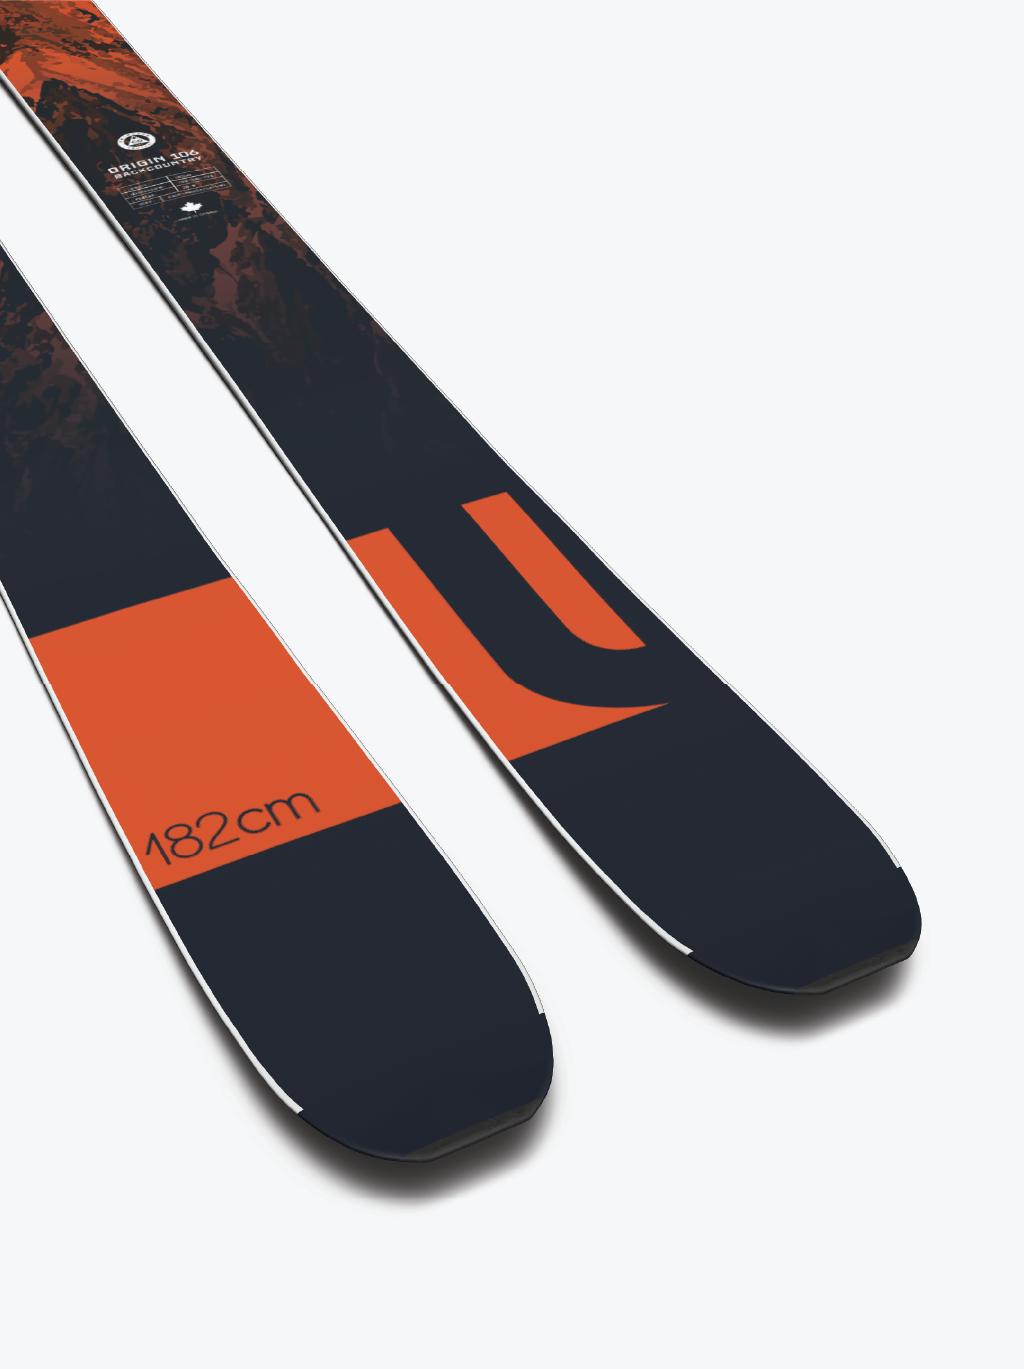 Liberty Skis 2023 Skis Liberty Skis Origin 106 Backcountry - 2023